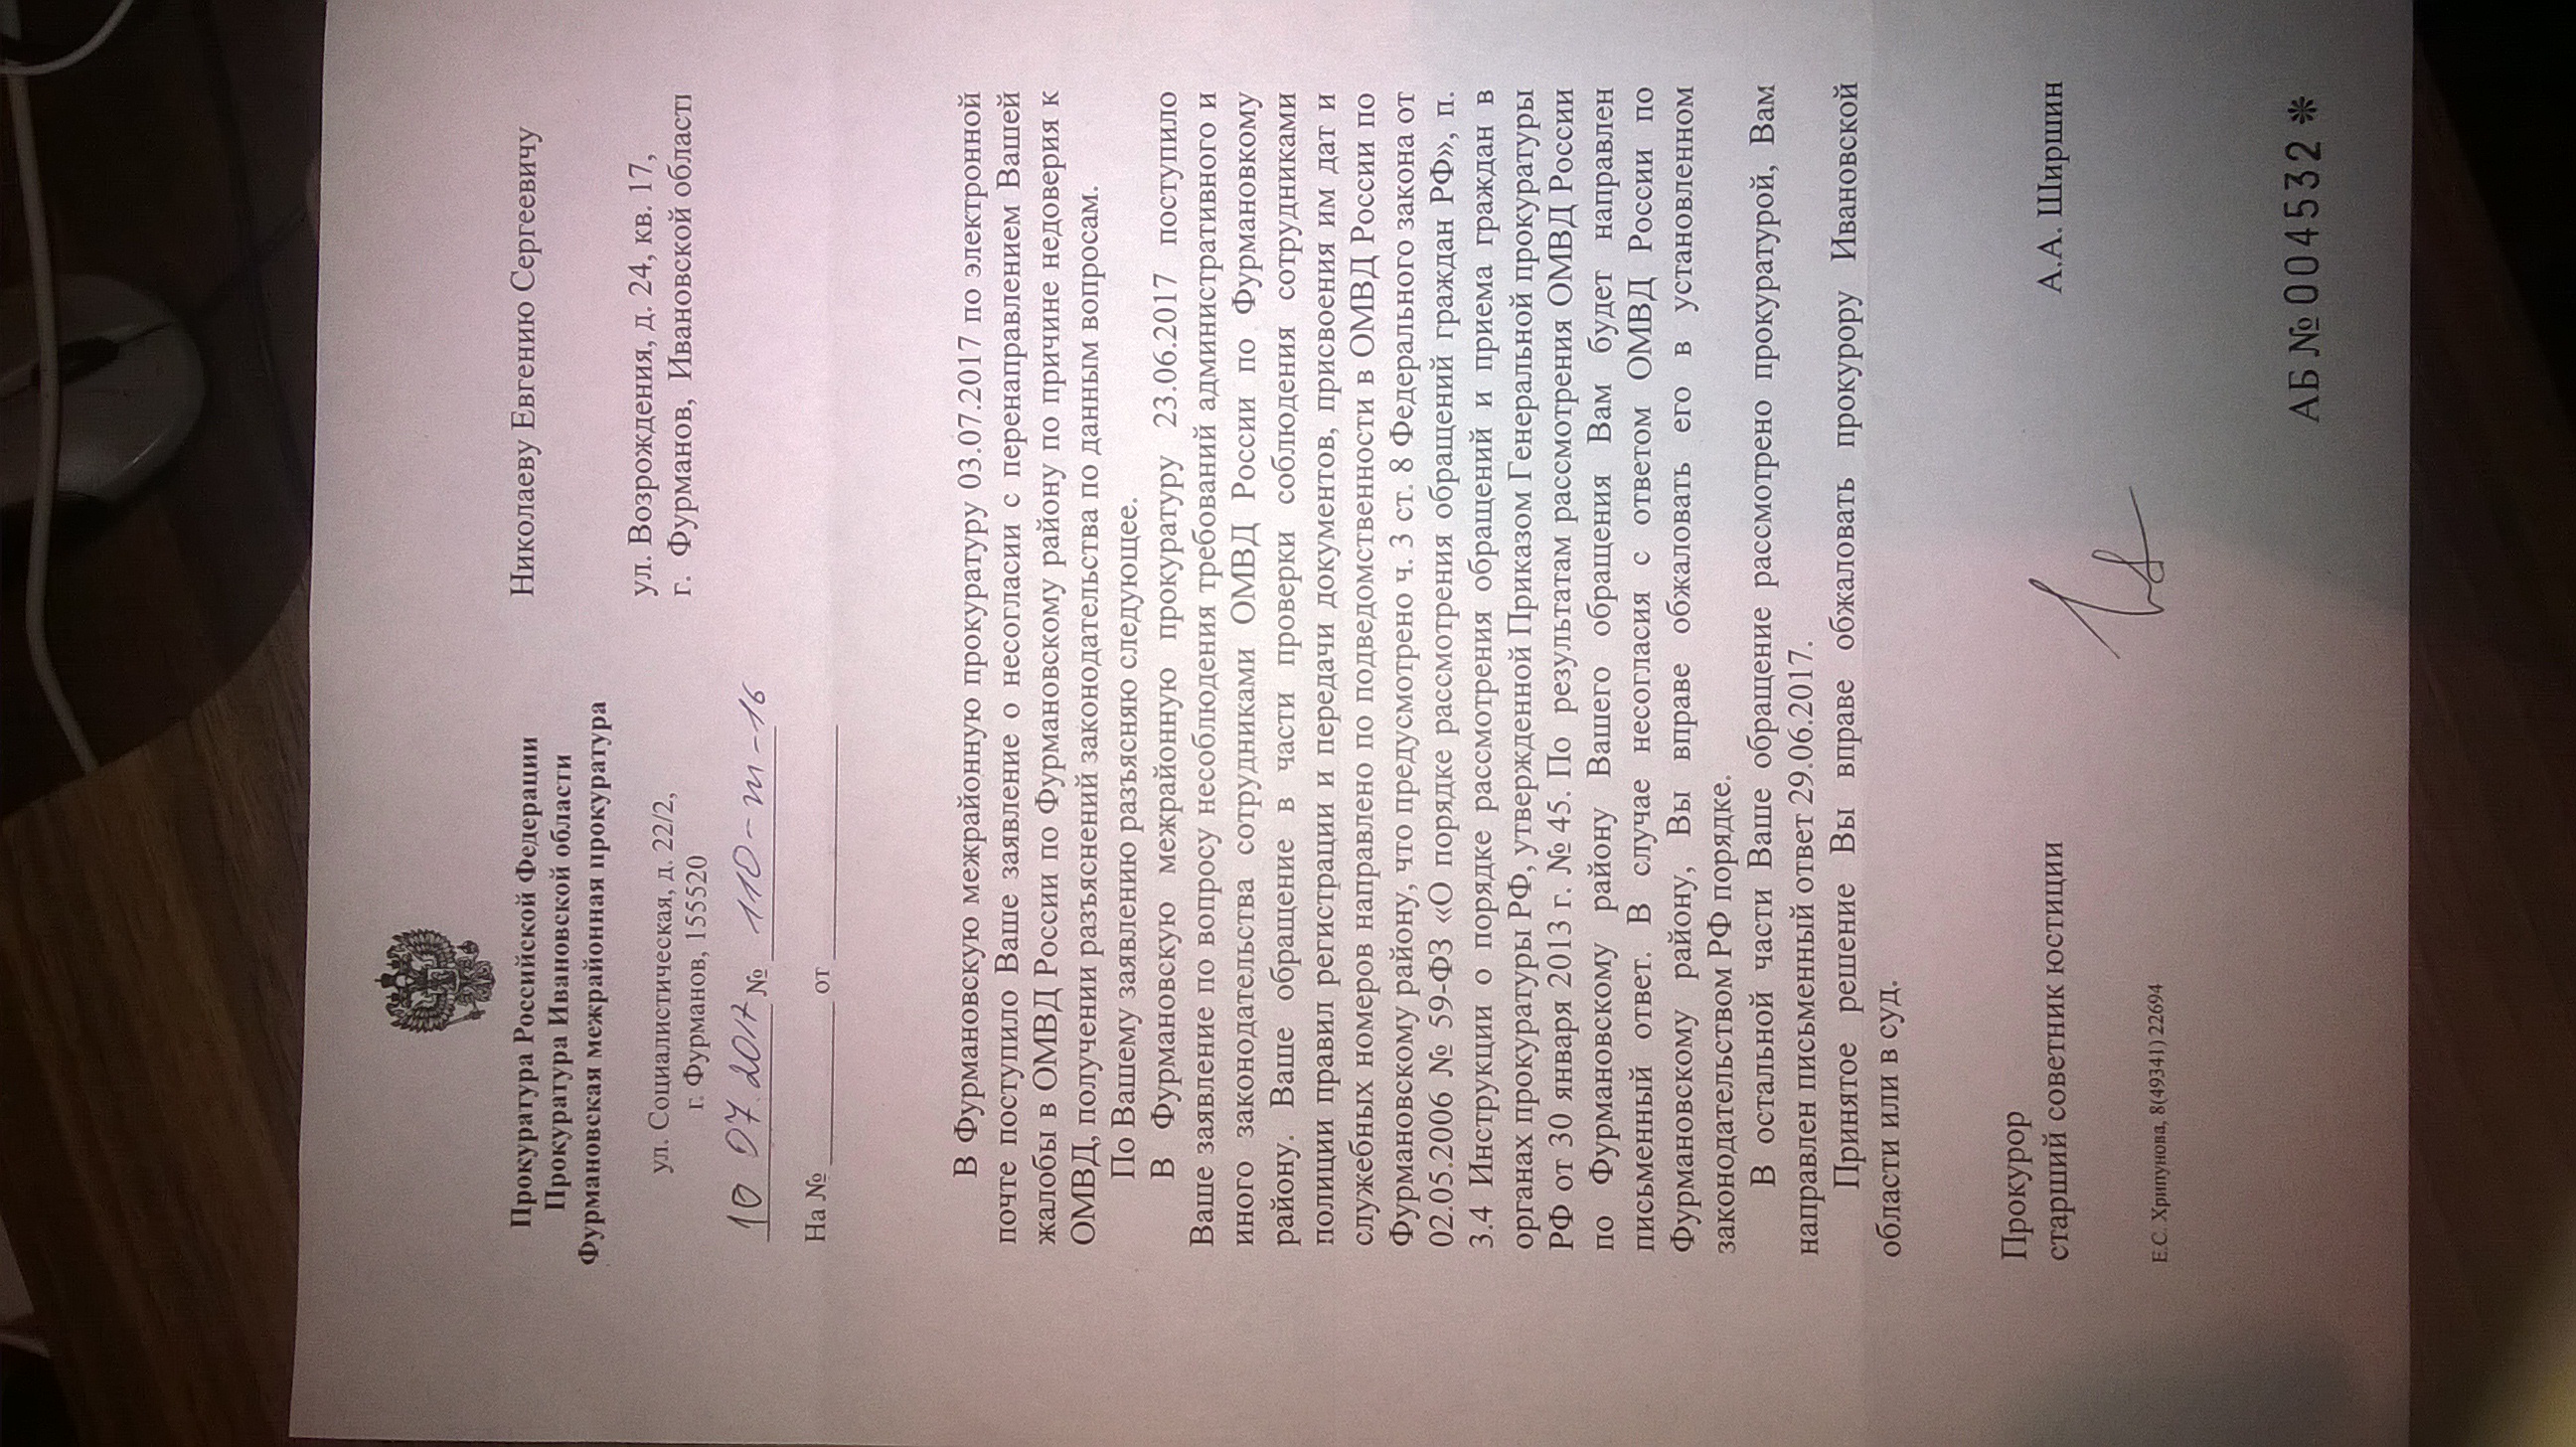 Ответ Фурмановскомй межрайонной прокуратуры(ID документа 71) (Дата документа 10.07.2017) Страница 1